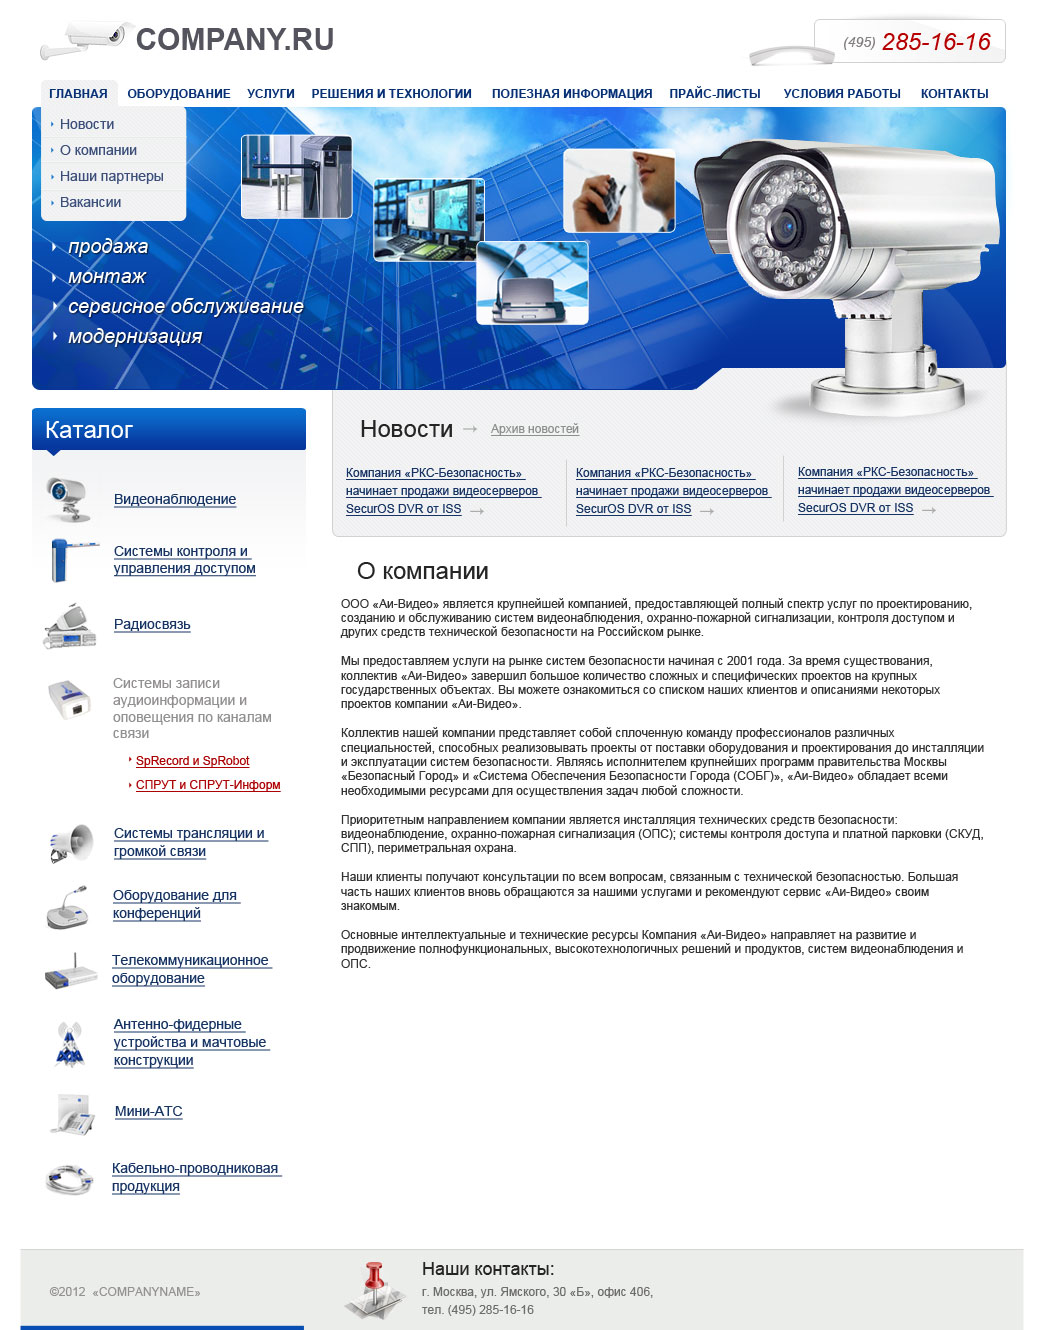 Дизайн сайта: Видеонаблюдение, Системы безопасности